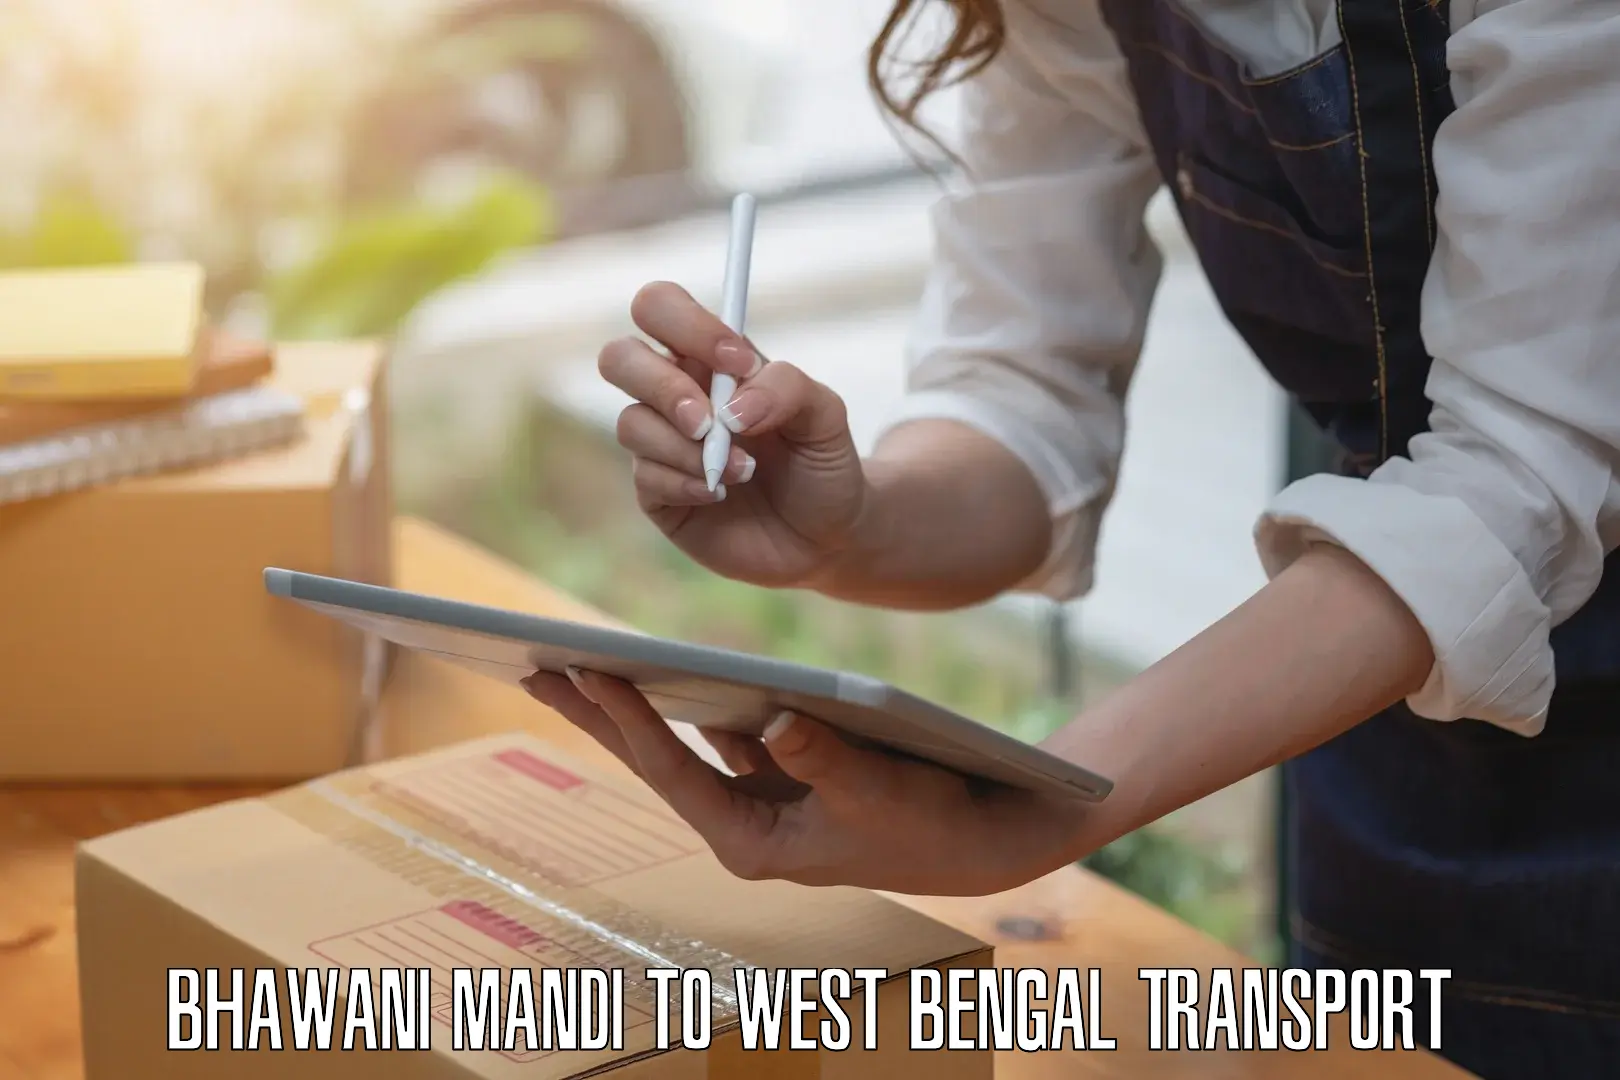 Online transport service Bhawani Mandi to Baneswar